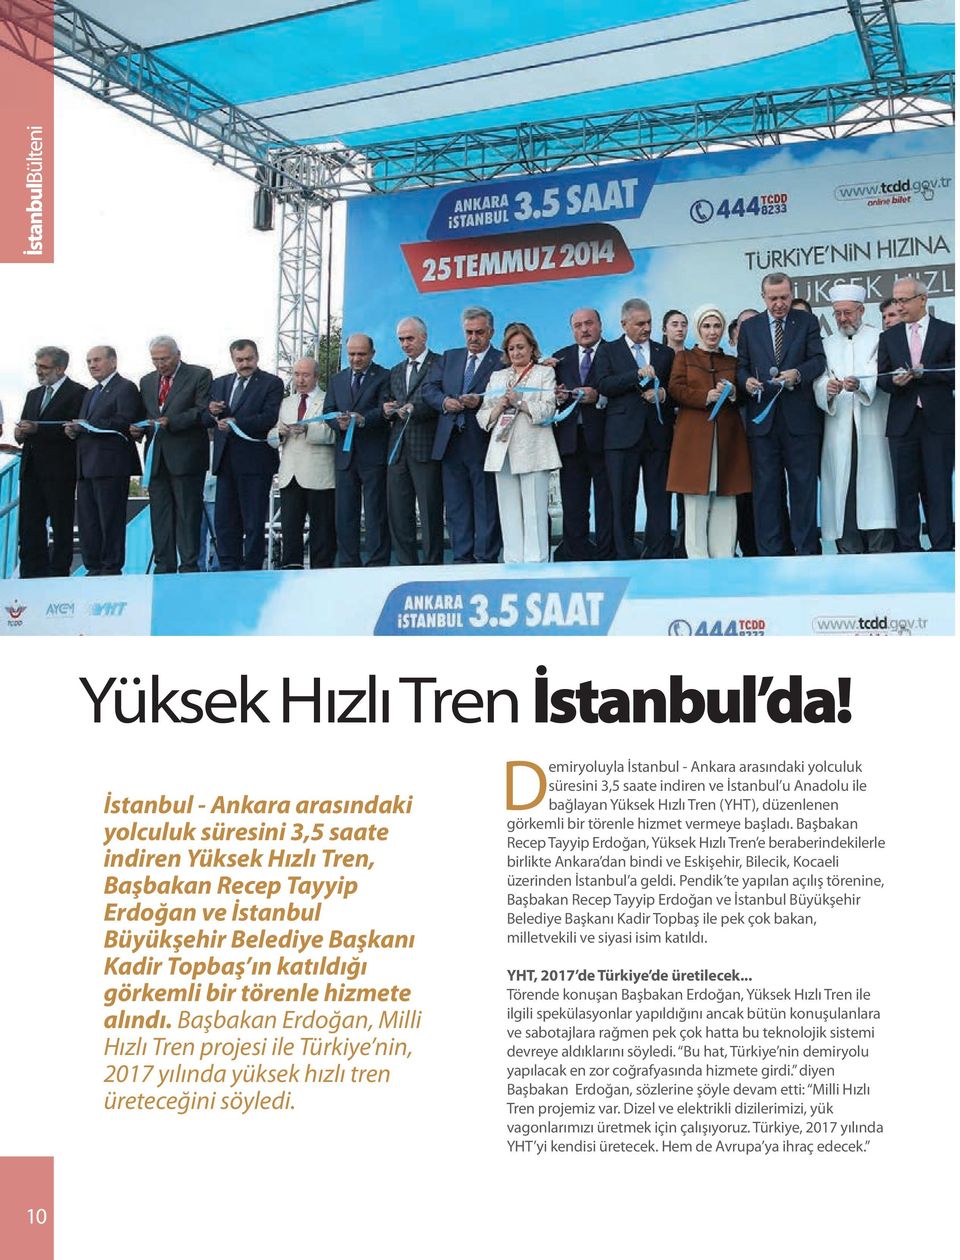 törenle hizmete alındı. Başbakan Erdoğan, Milli Hızlı Tren projesi ile Türkiye nin, 2017 yılında yüksek hızlı tren üreteceğini söyledi.